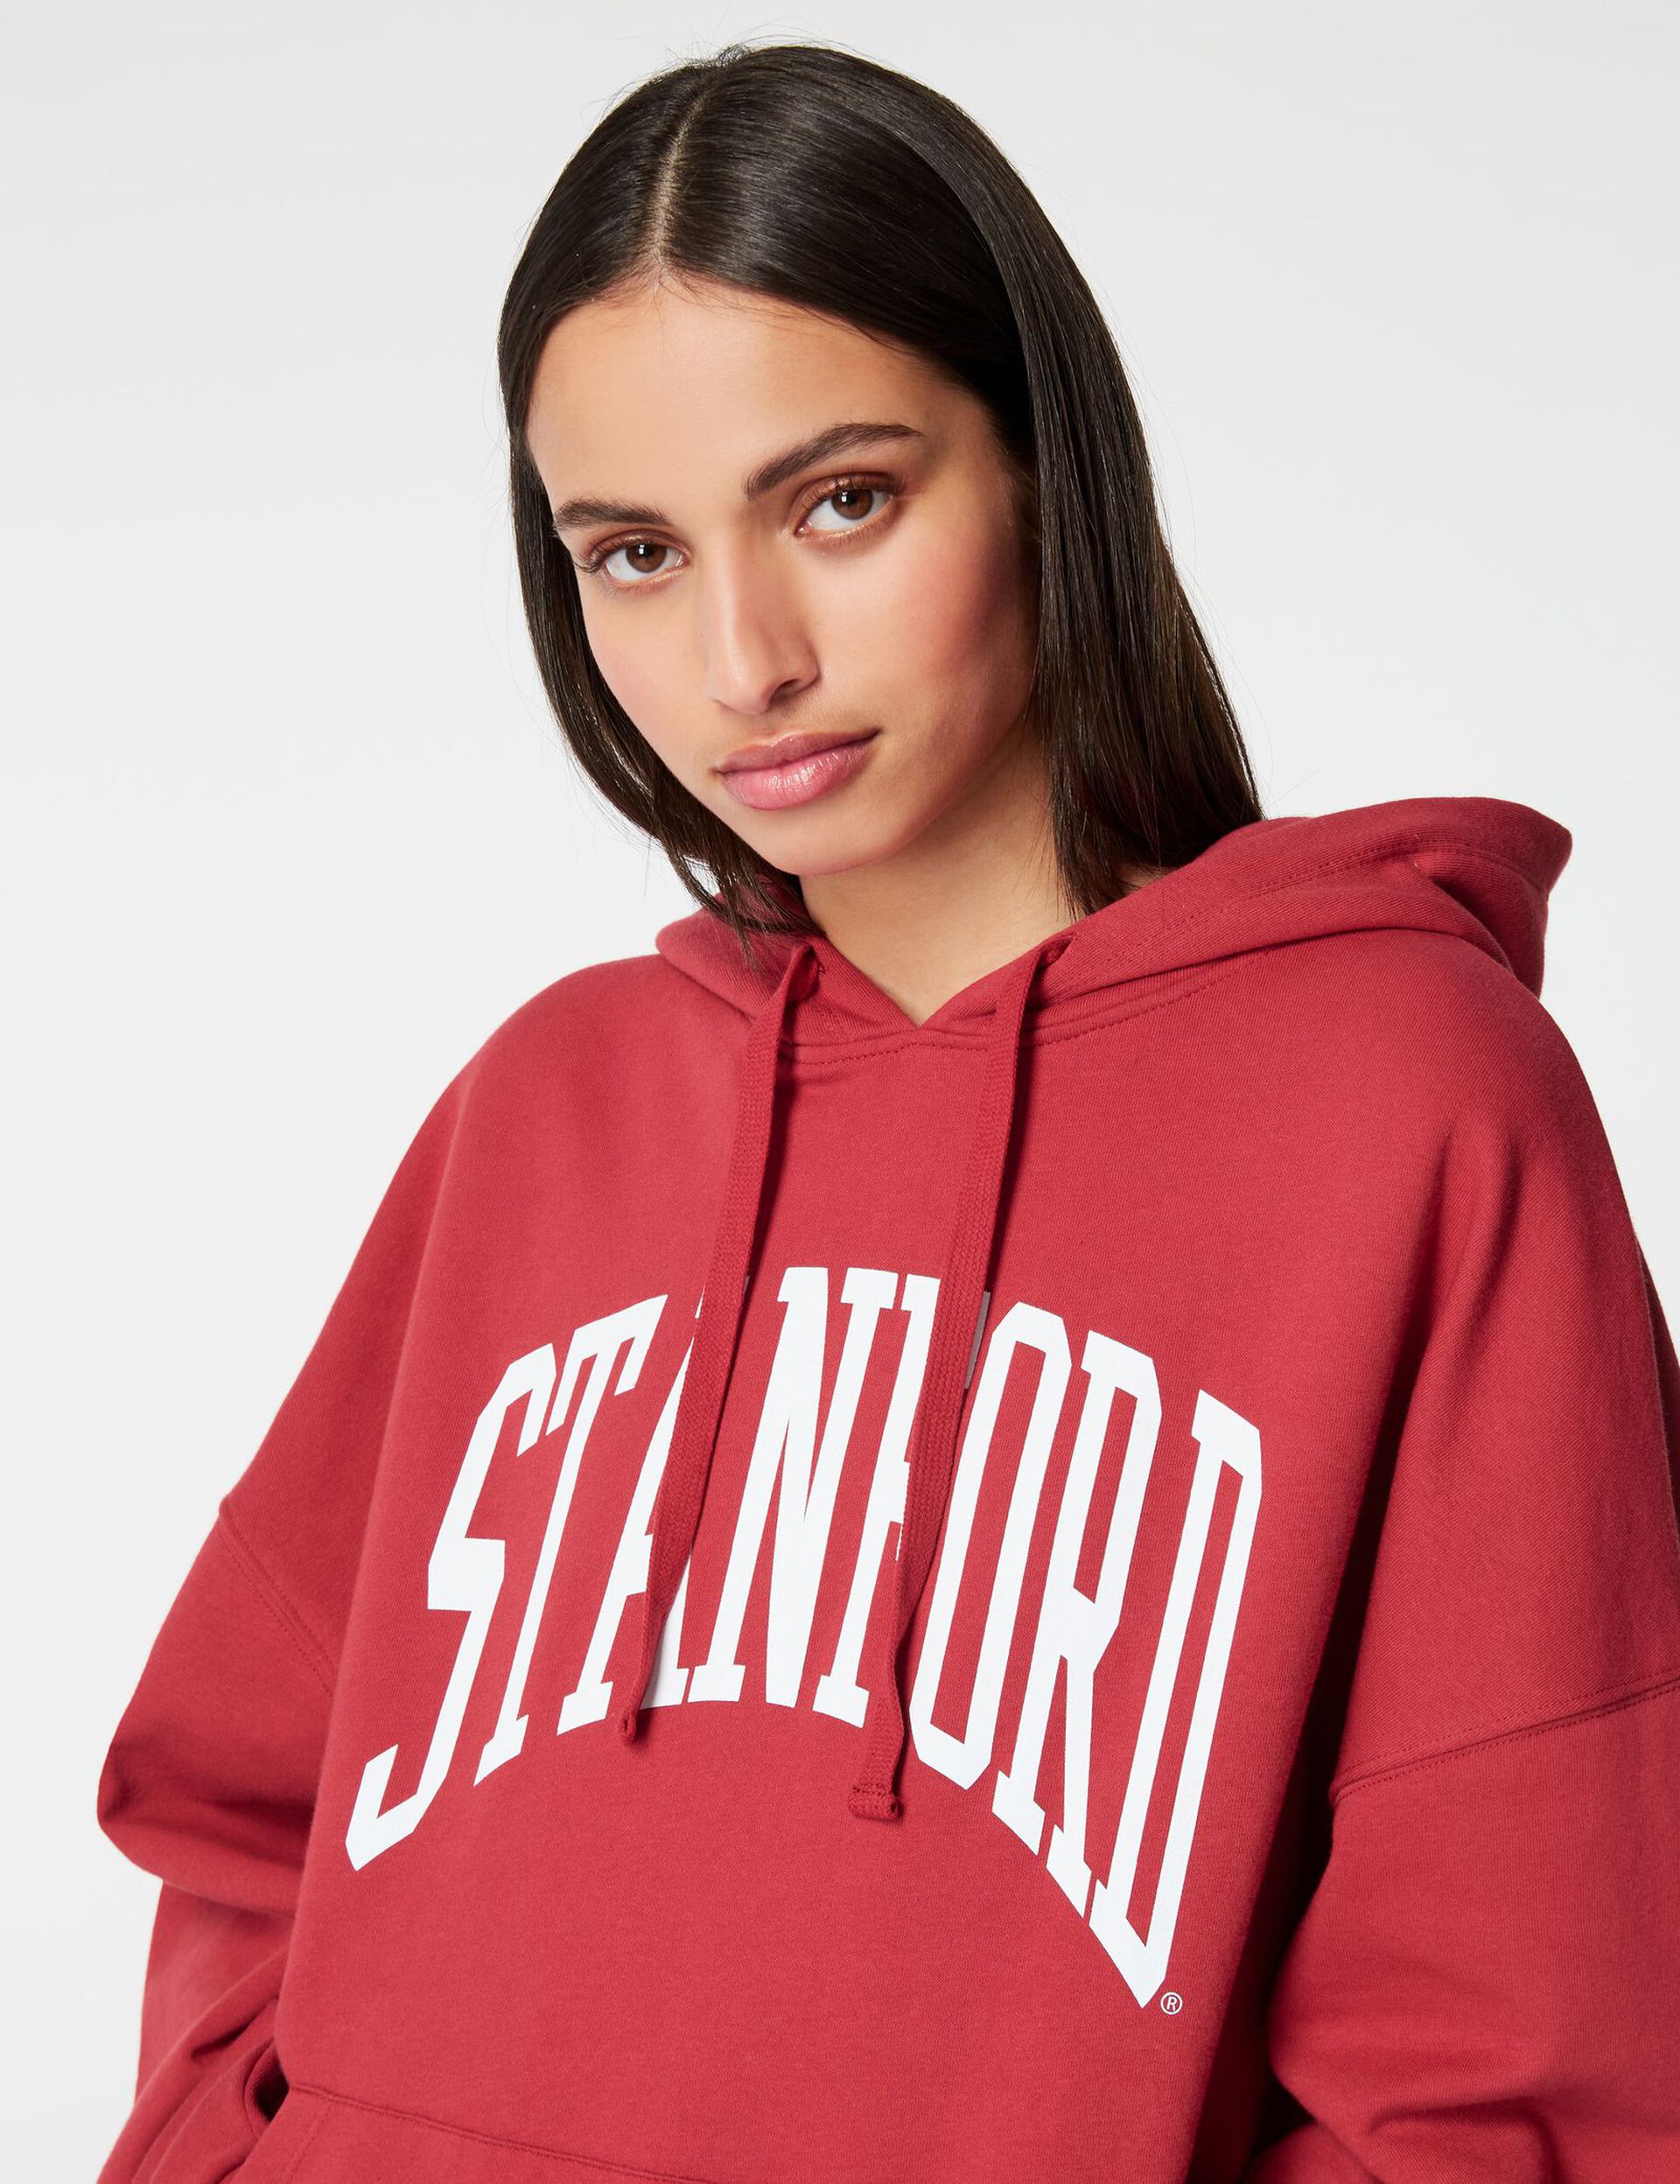 Stanford hoodie